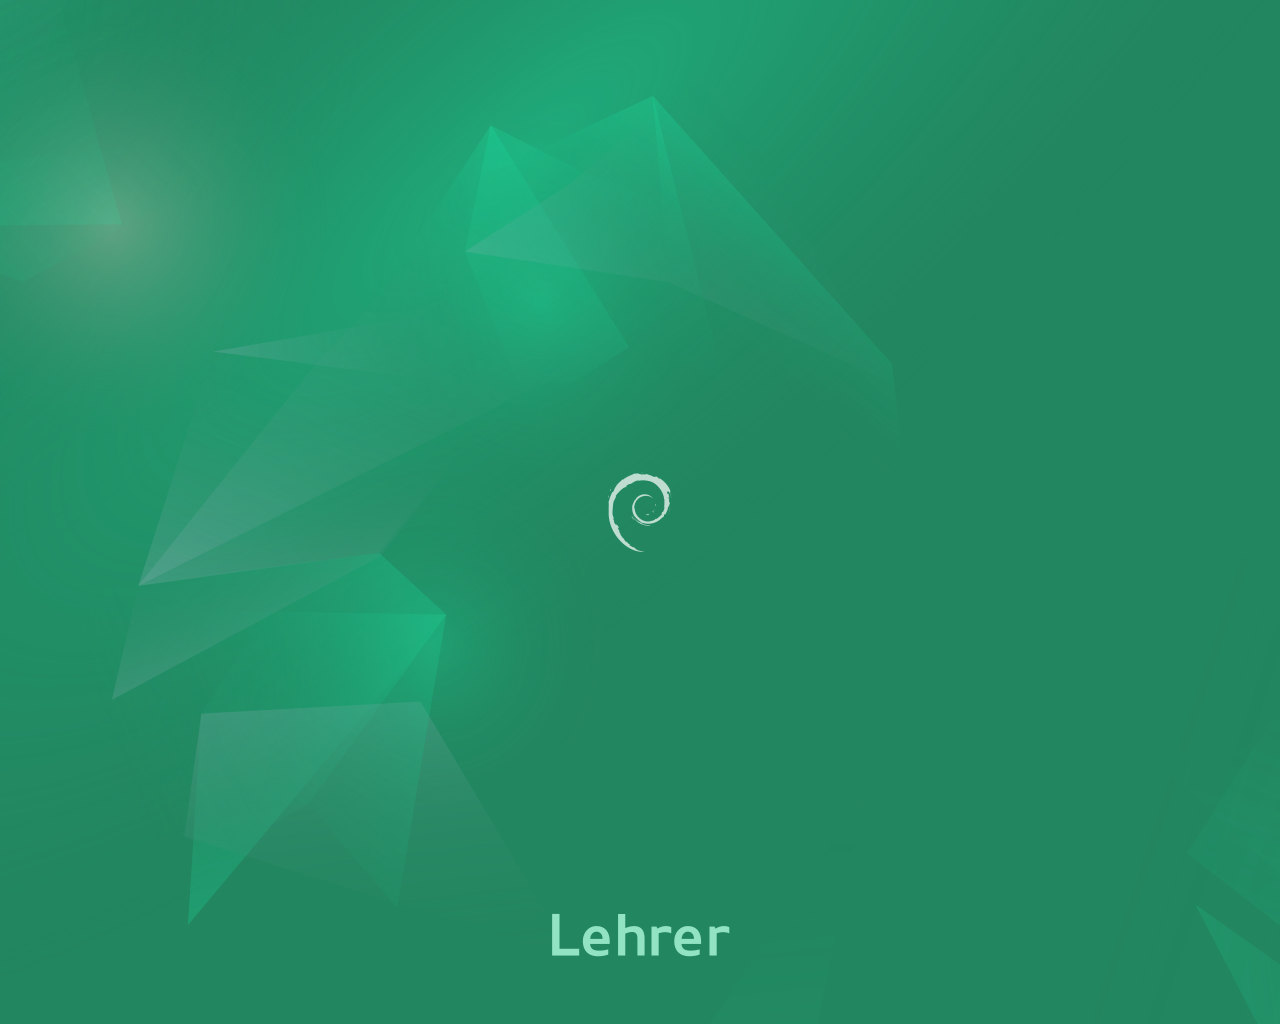 Bildschirmhintergrund für den grünen Lehrerbildschirm im Emerald-Theme